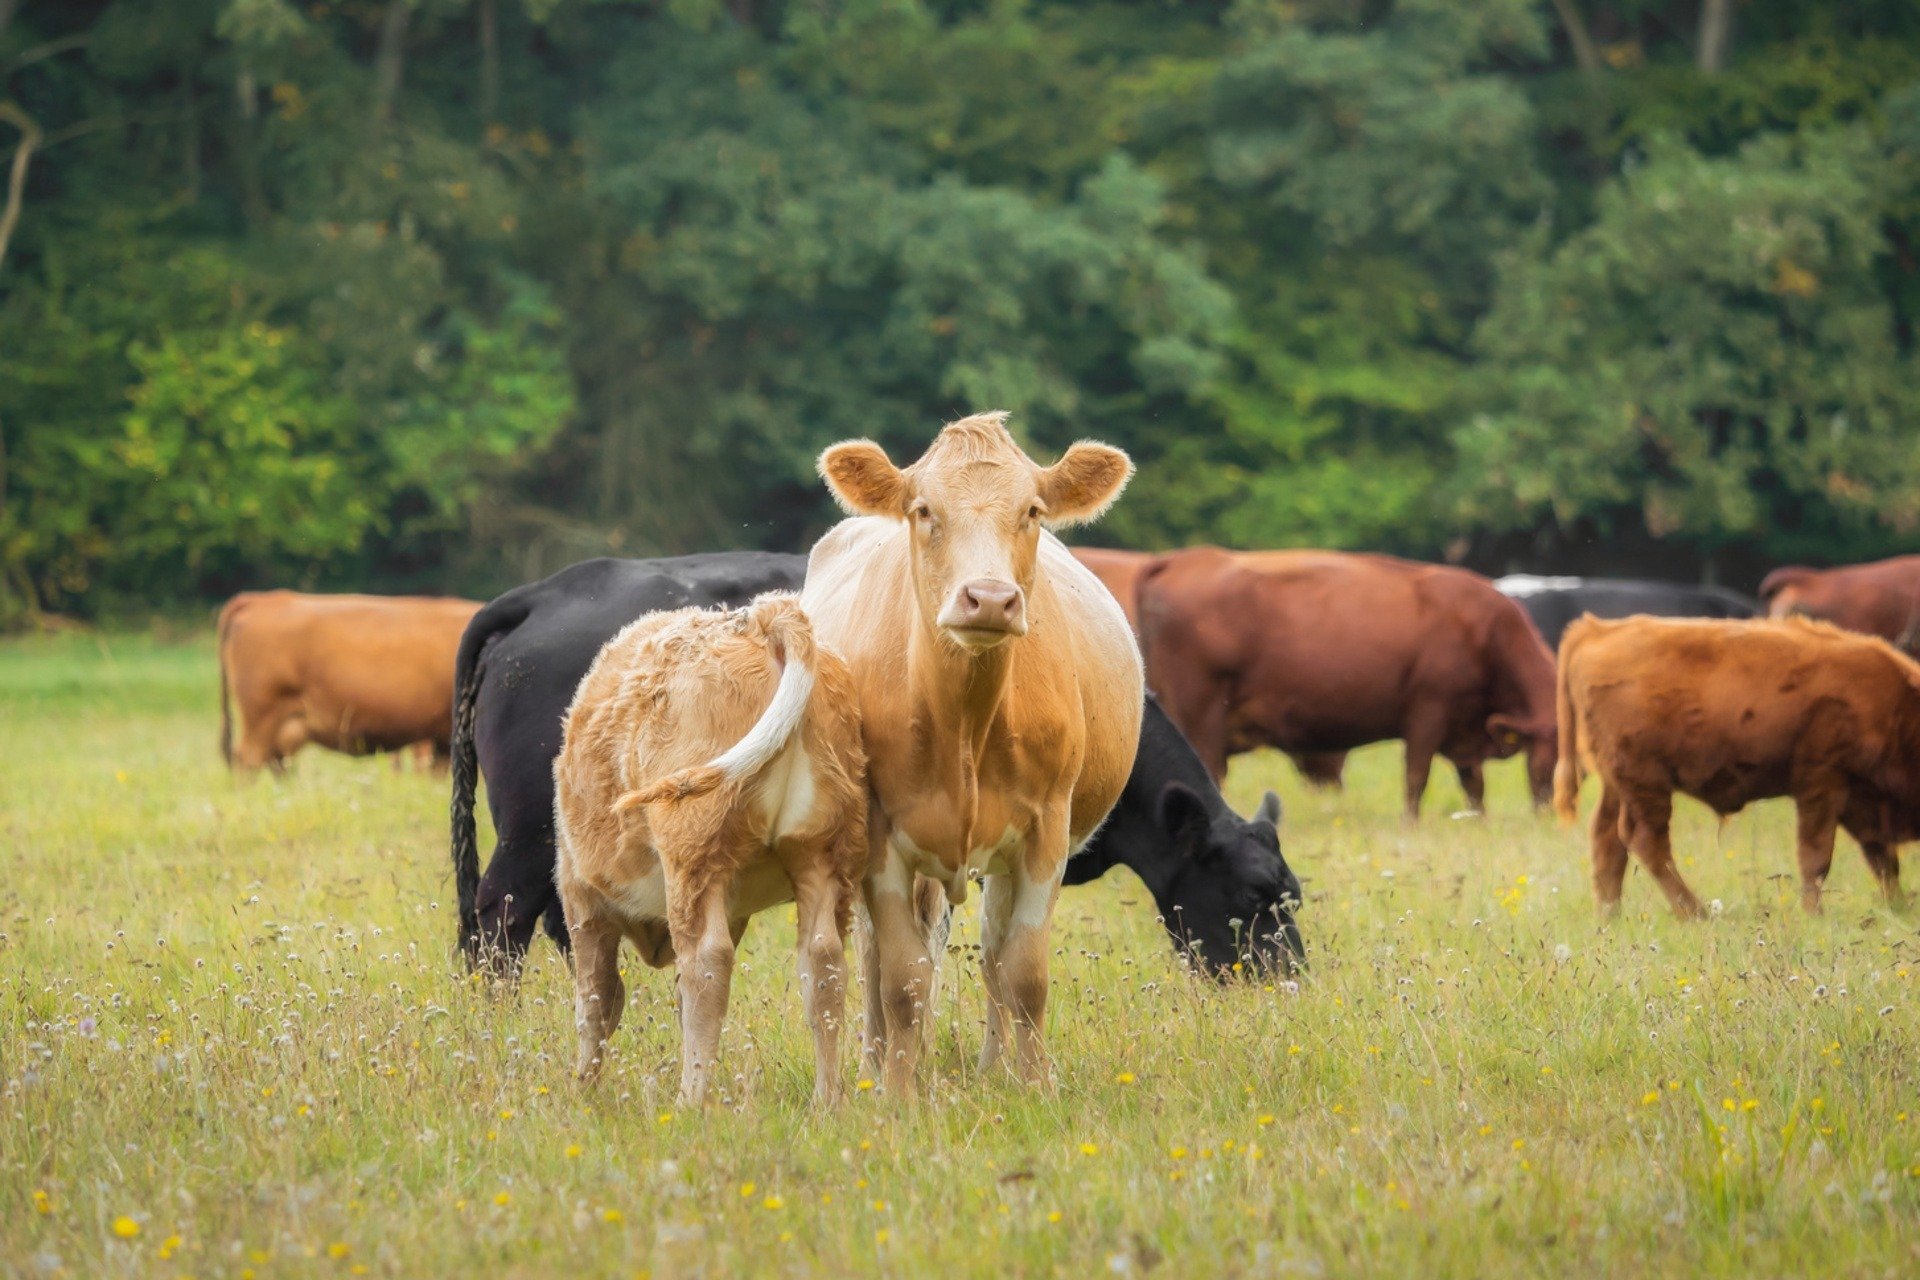 Raising Animals Sustainably on Pasture - FoodPrint